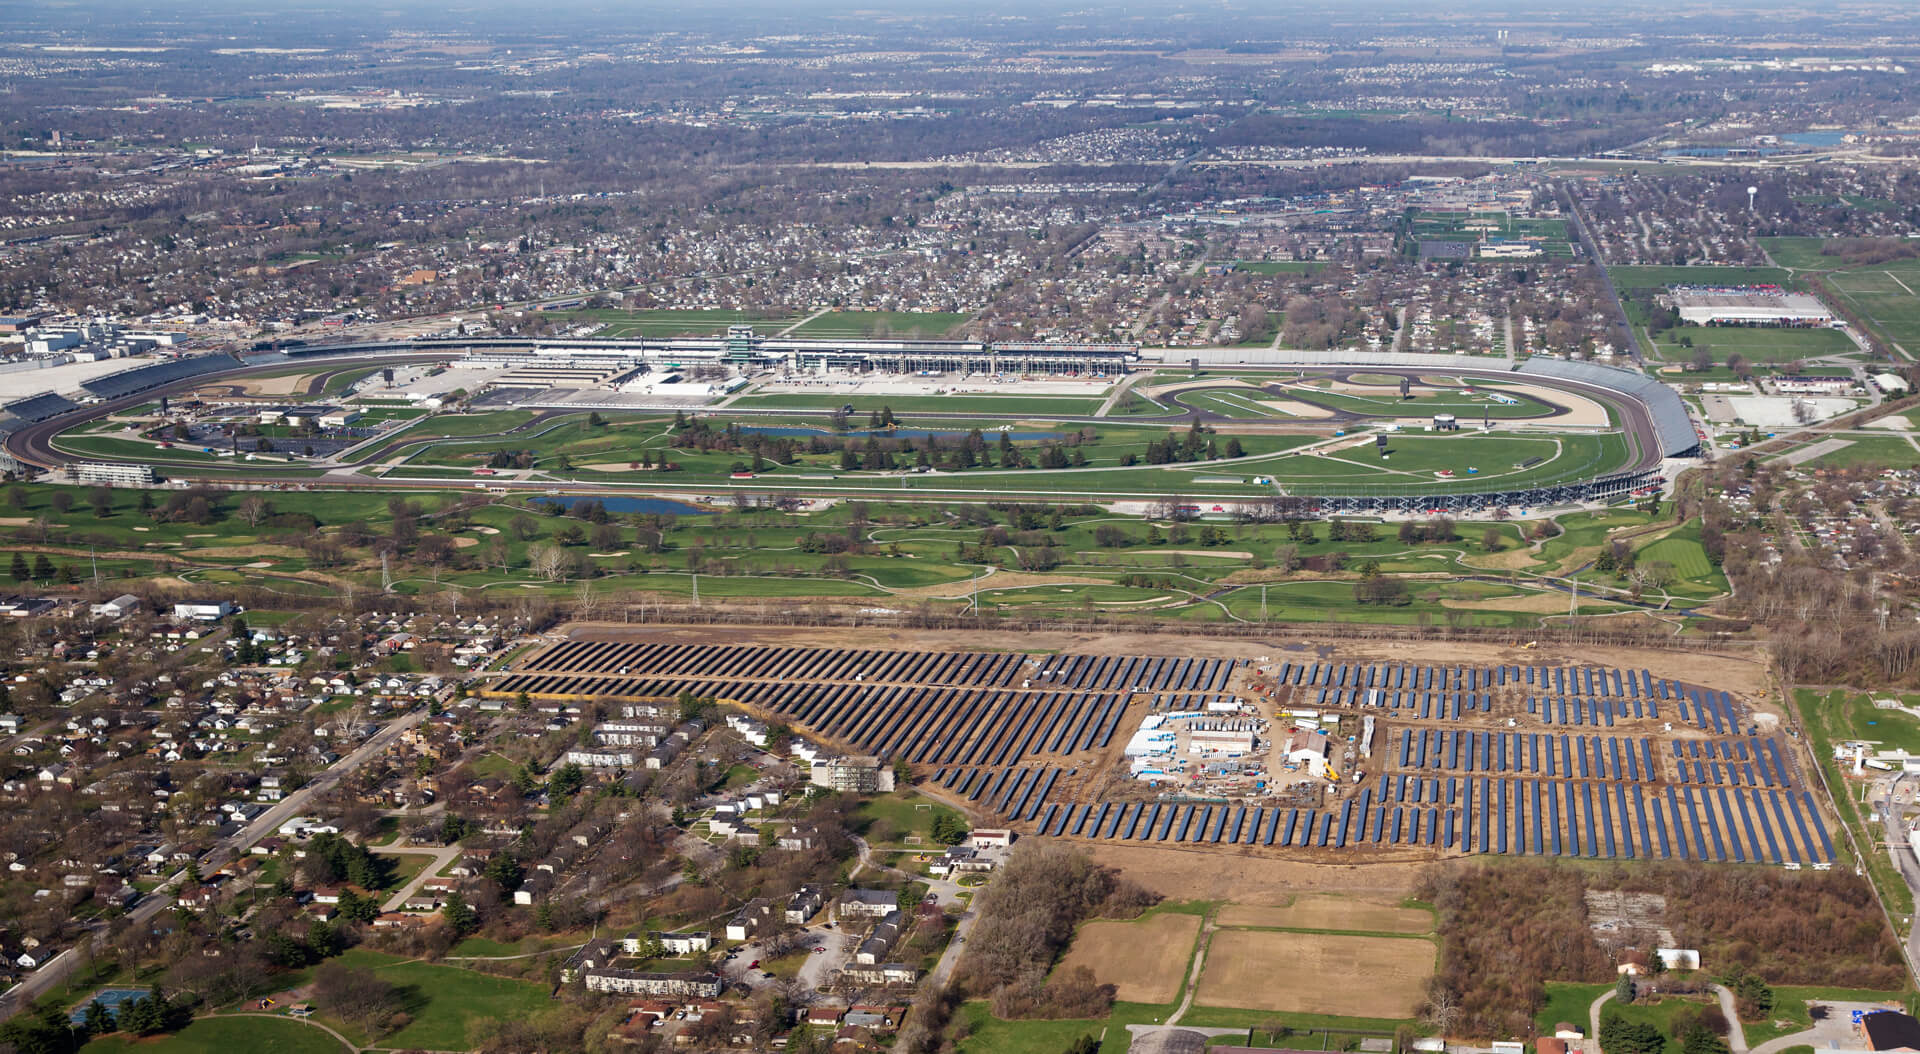 El circuito de Indianápolis cuenta con la mayor instalación fotovoltaica, una planta de 9 MW.